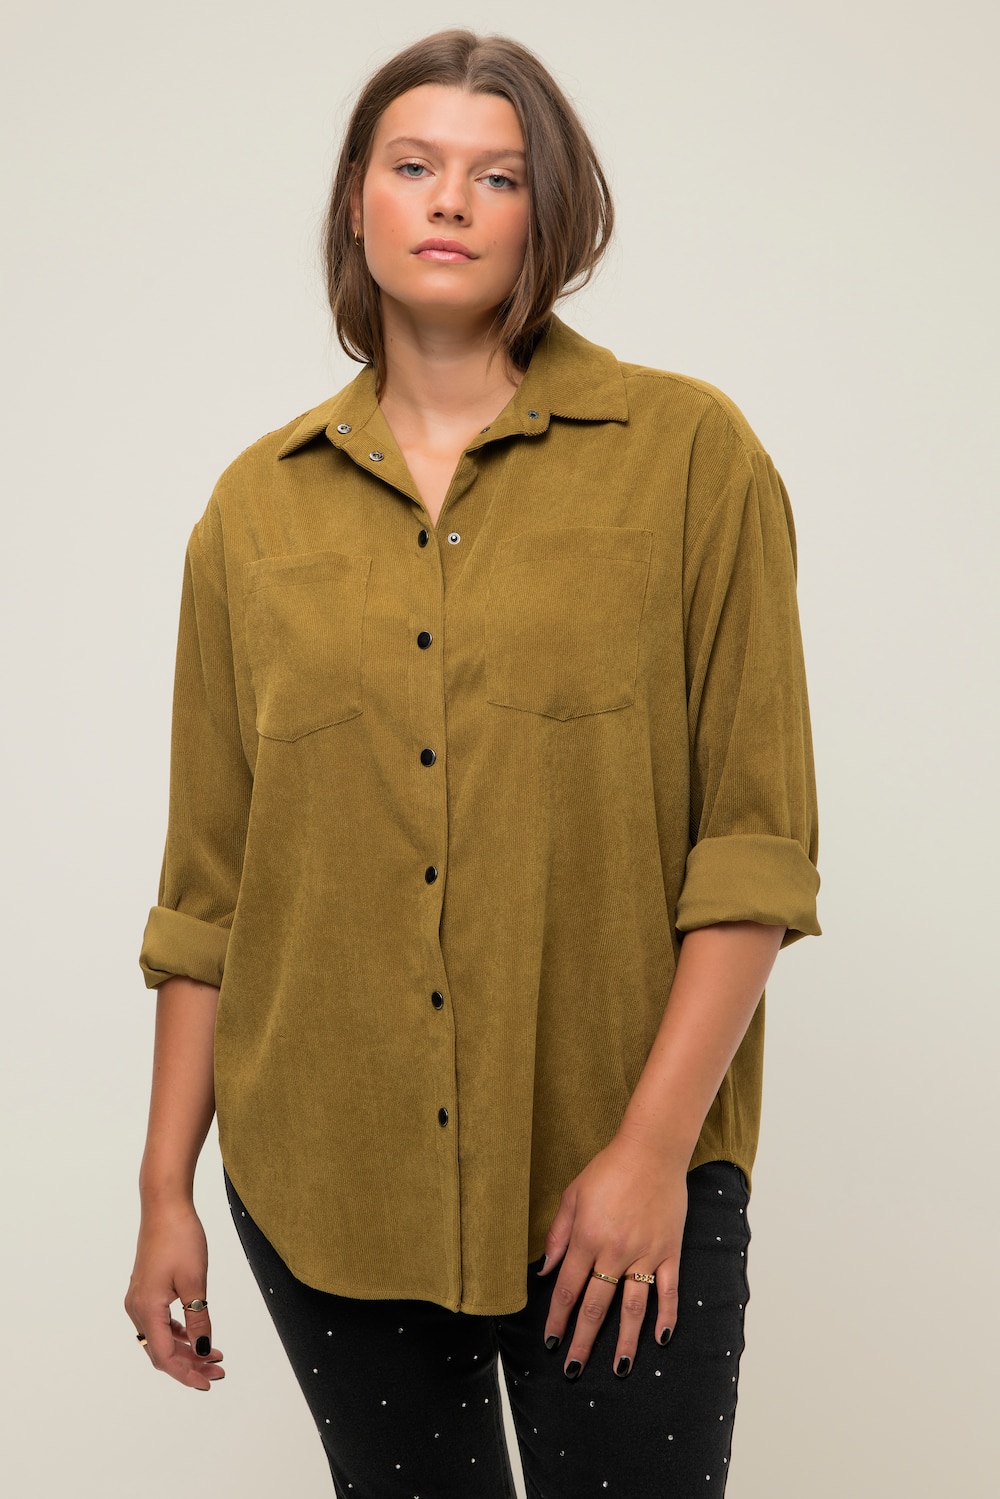 Grote Maten Corduroy overhemd, Dames, bruin, Maat: 54/56, Polyester, Studio Untold